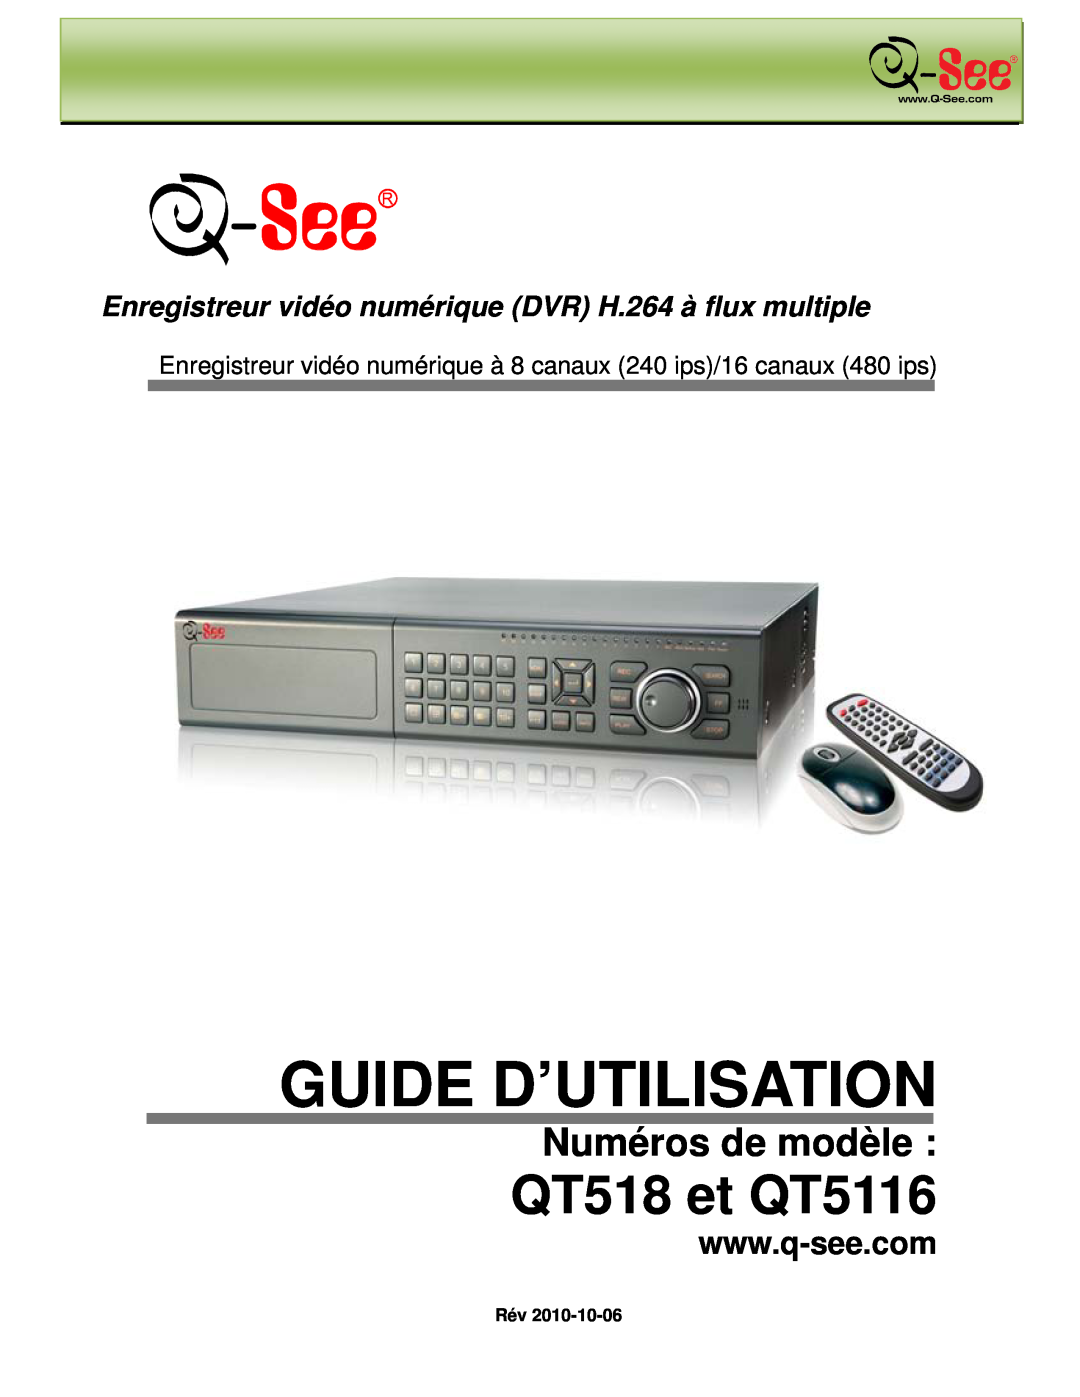 Q-See manual Guide D’Utilisation, QT518 et QT5116, Numéros de modèle 